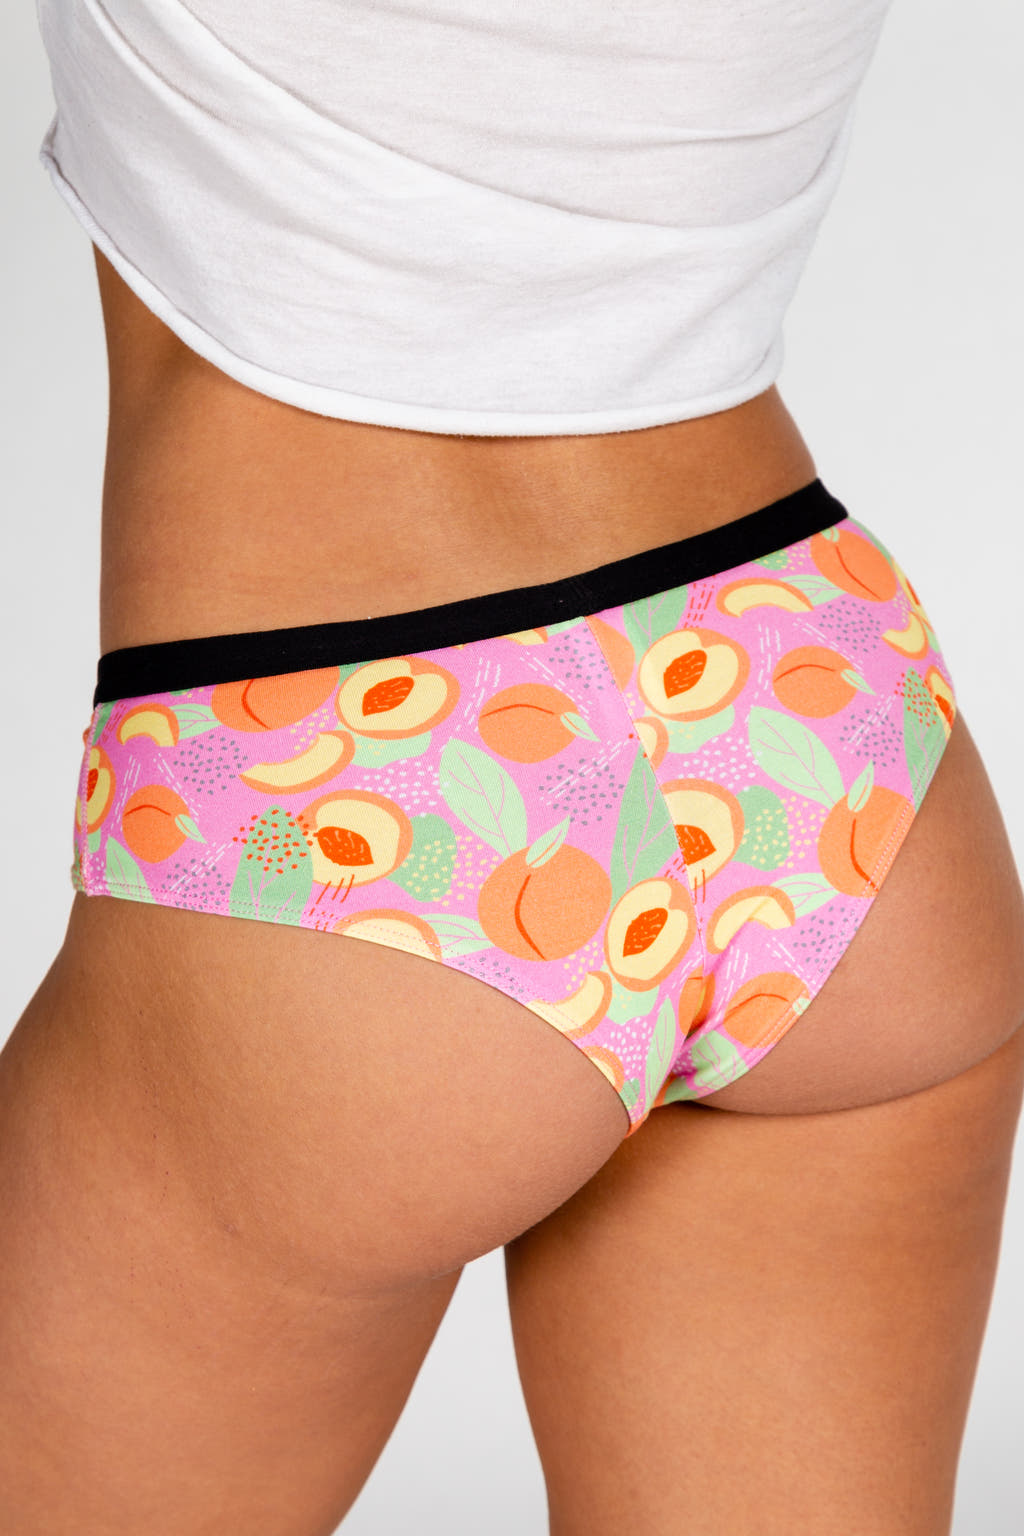 Peach underwear for women